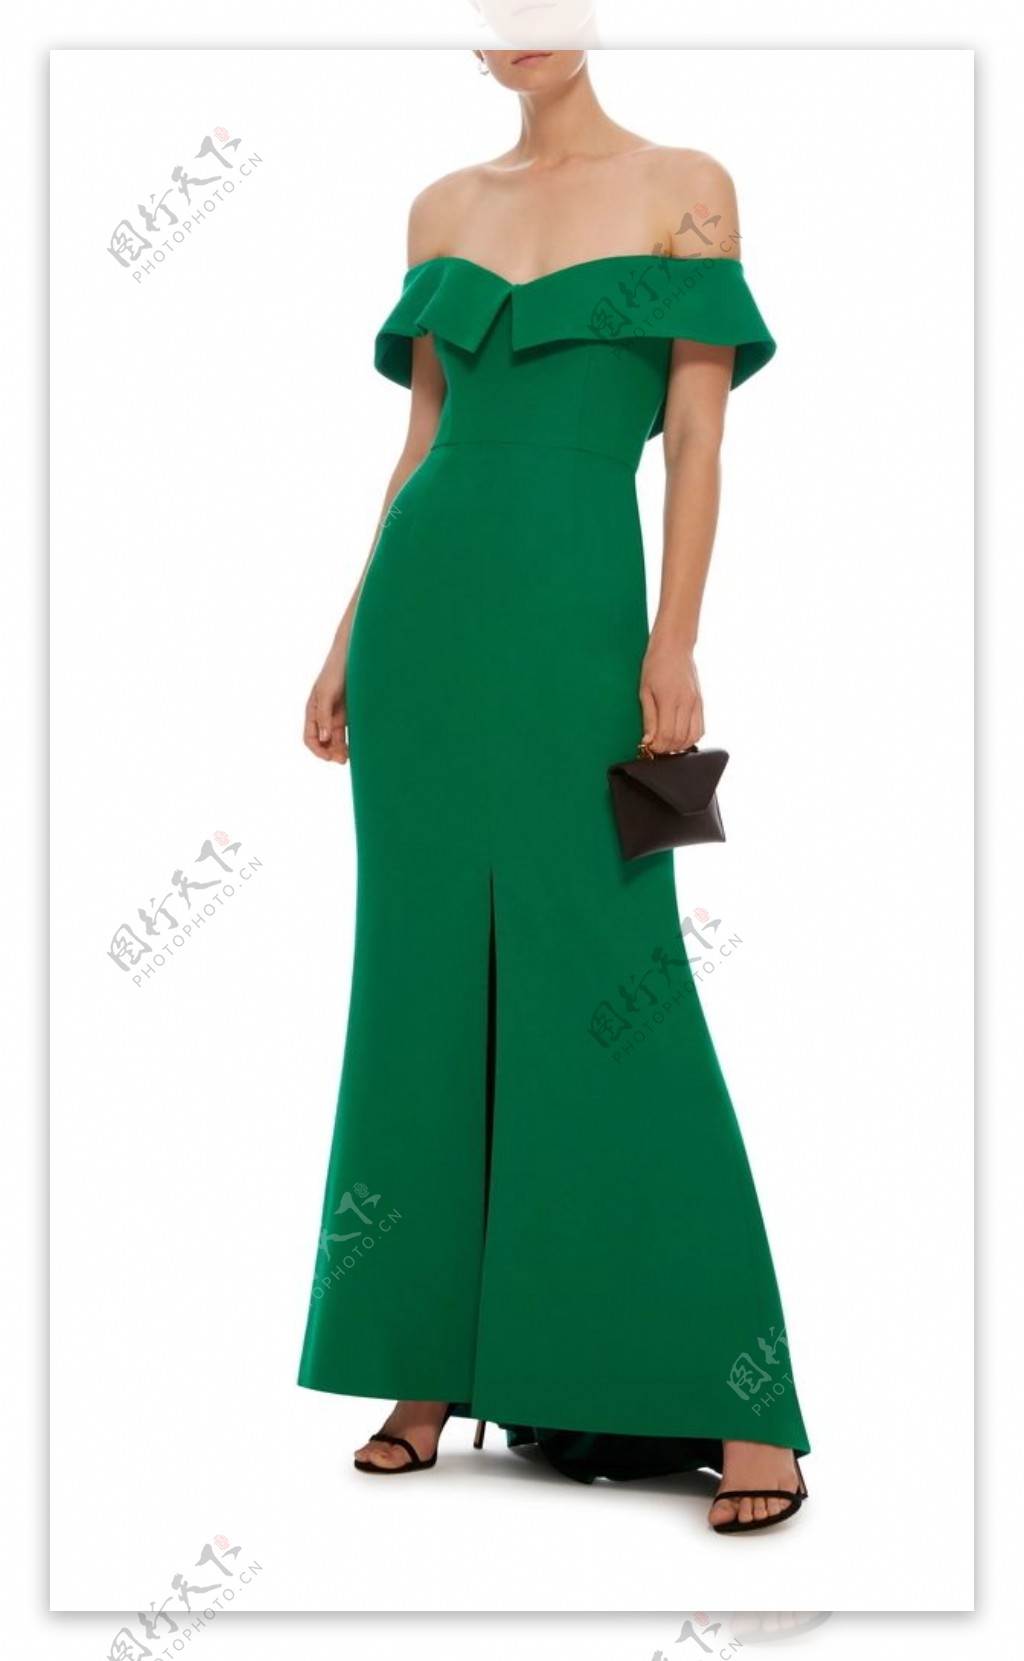 绿色连衣裙礼服